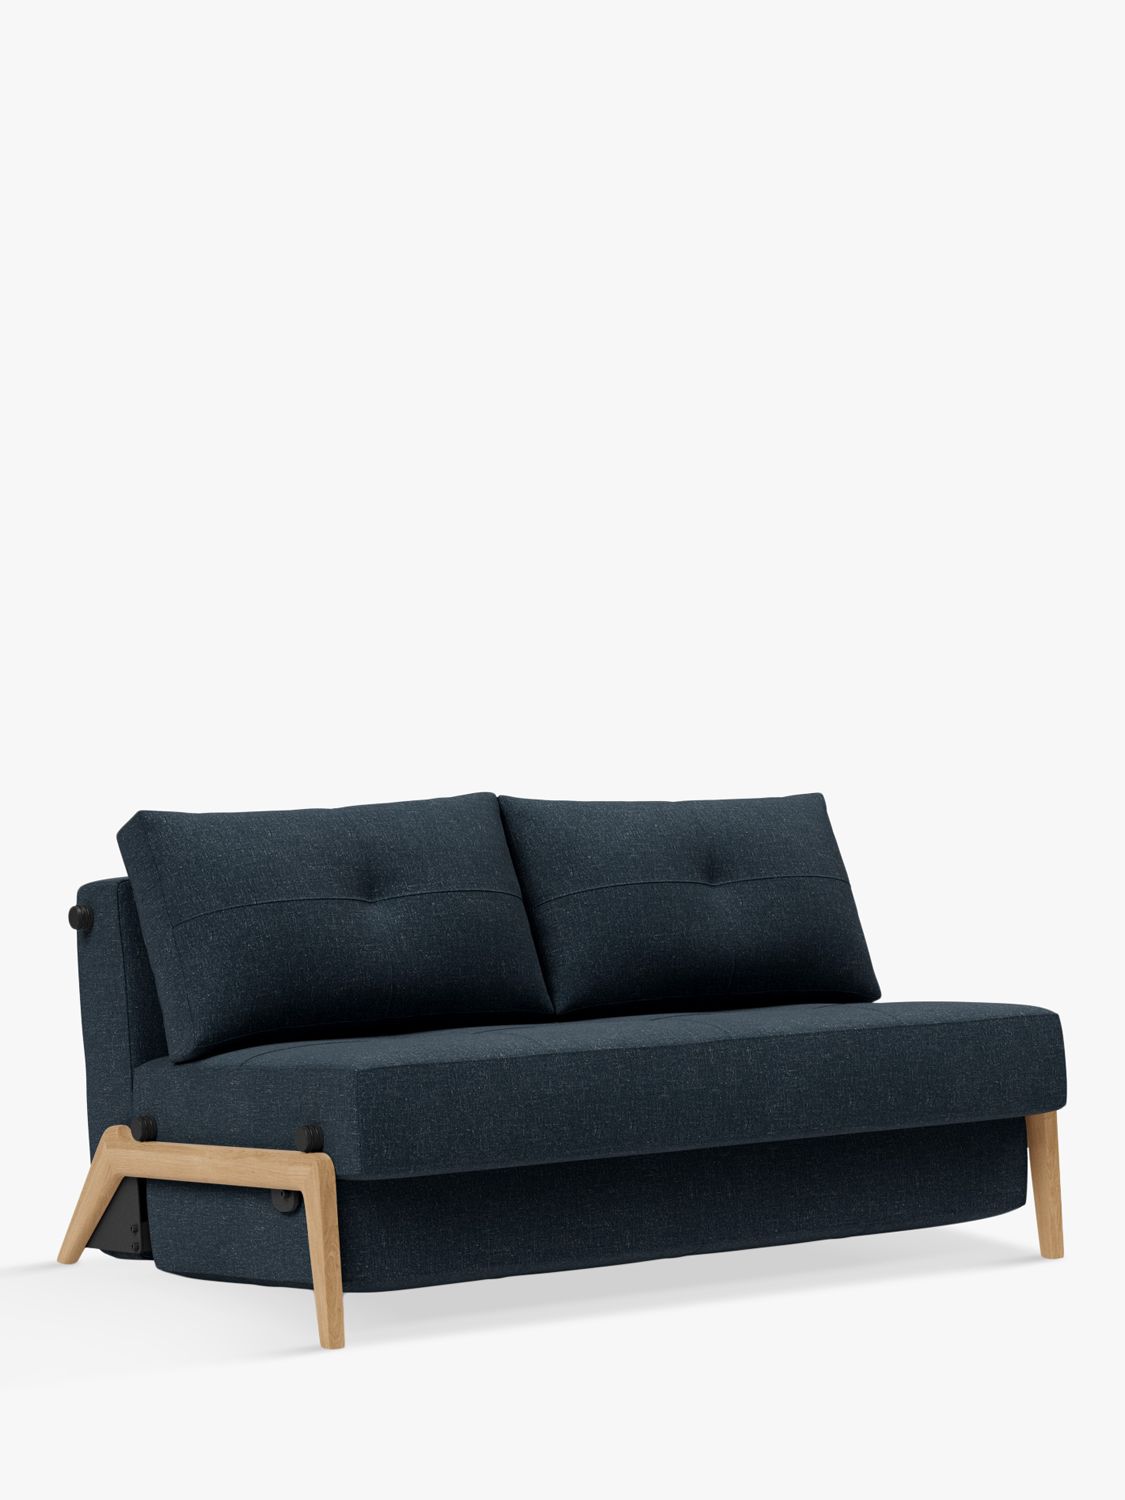 ding wazig Rondsel Innovation Living Cubed 140 Sofa Bed, Nist Blue